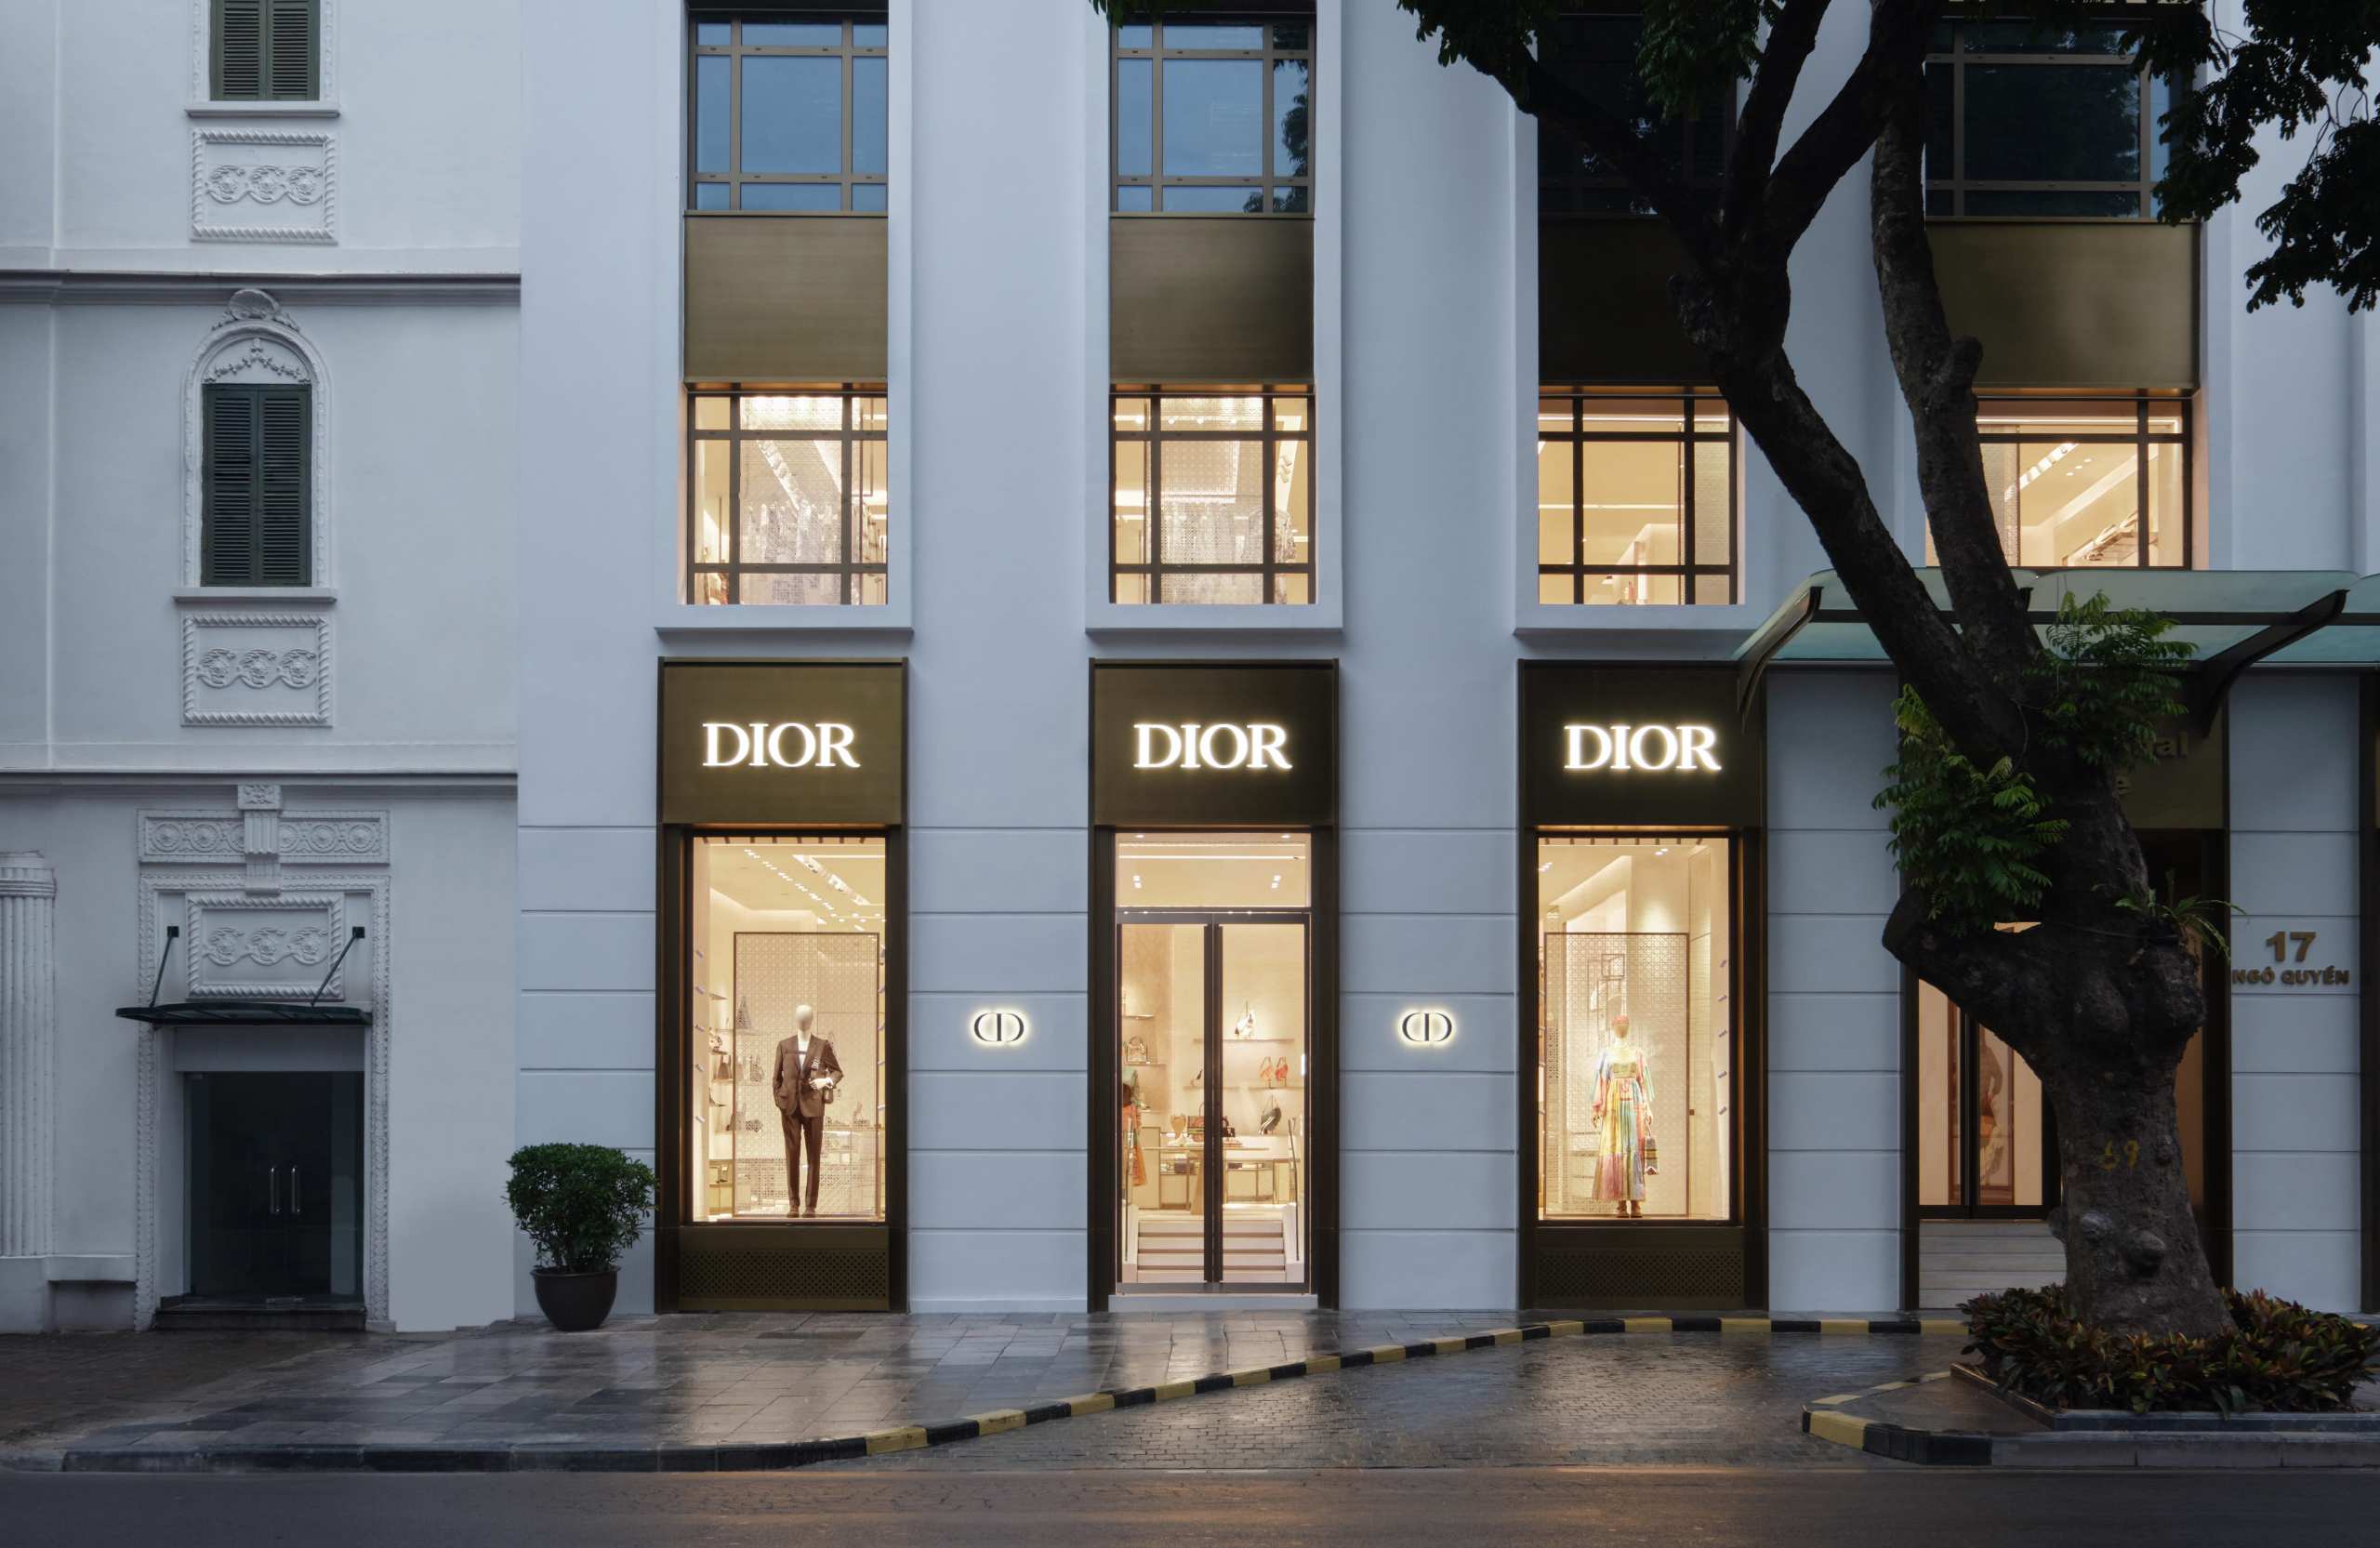 Có gì bên trong cửa hàng thời trang di sản được mệnh danh là vũ trụ Dior   Nhịp sống kinh tế Việt Nam  Thế giới